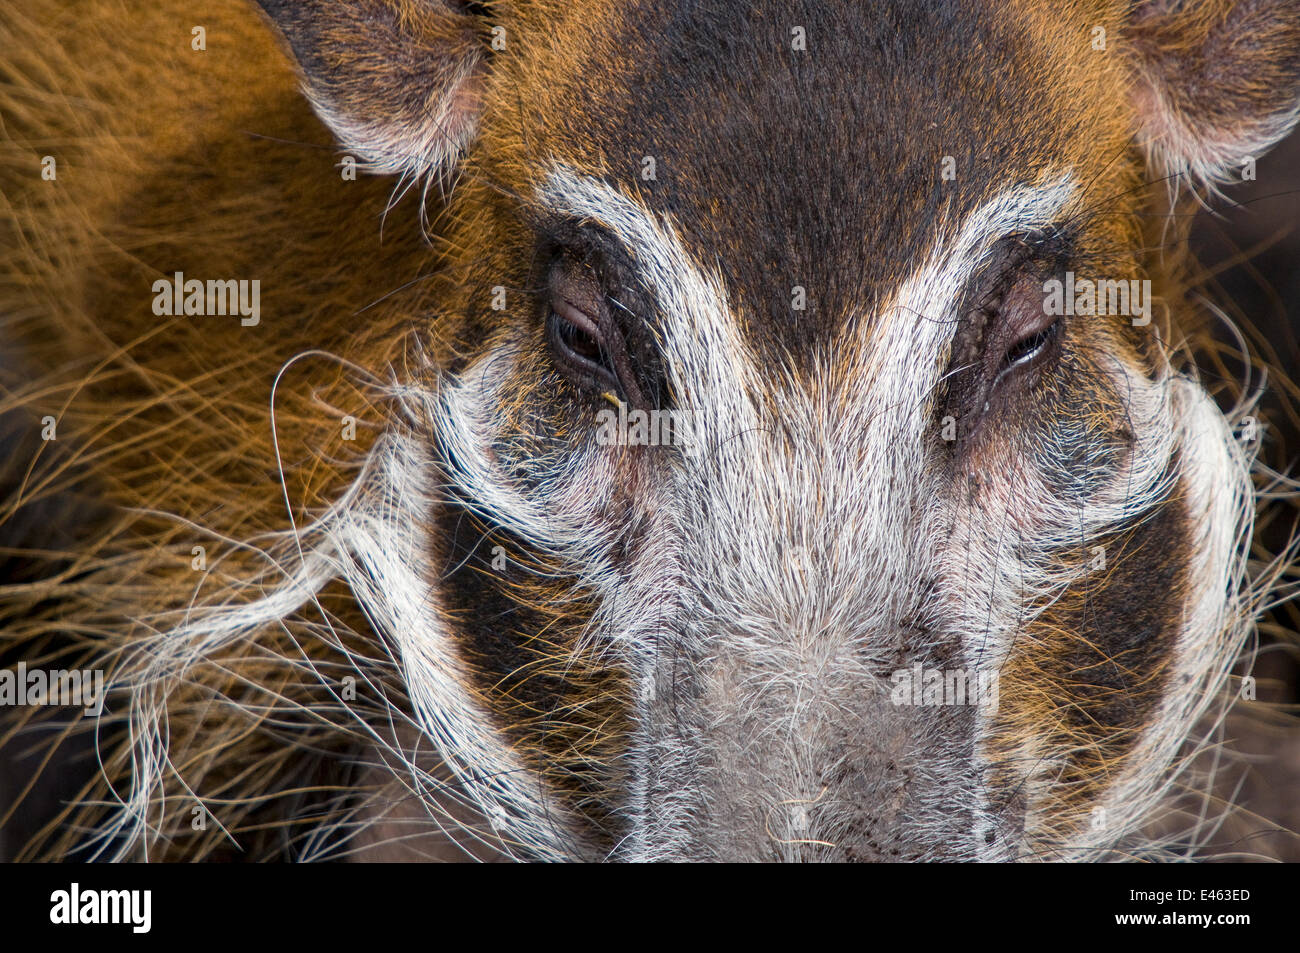 Red River hog (Potamochoerus porcus) vicino fino alla testa, captive Foto Stock